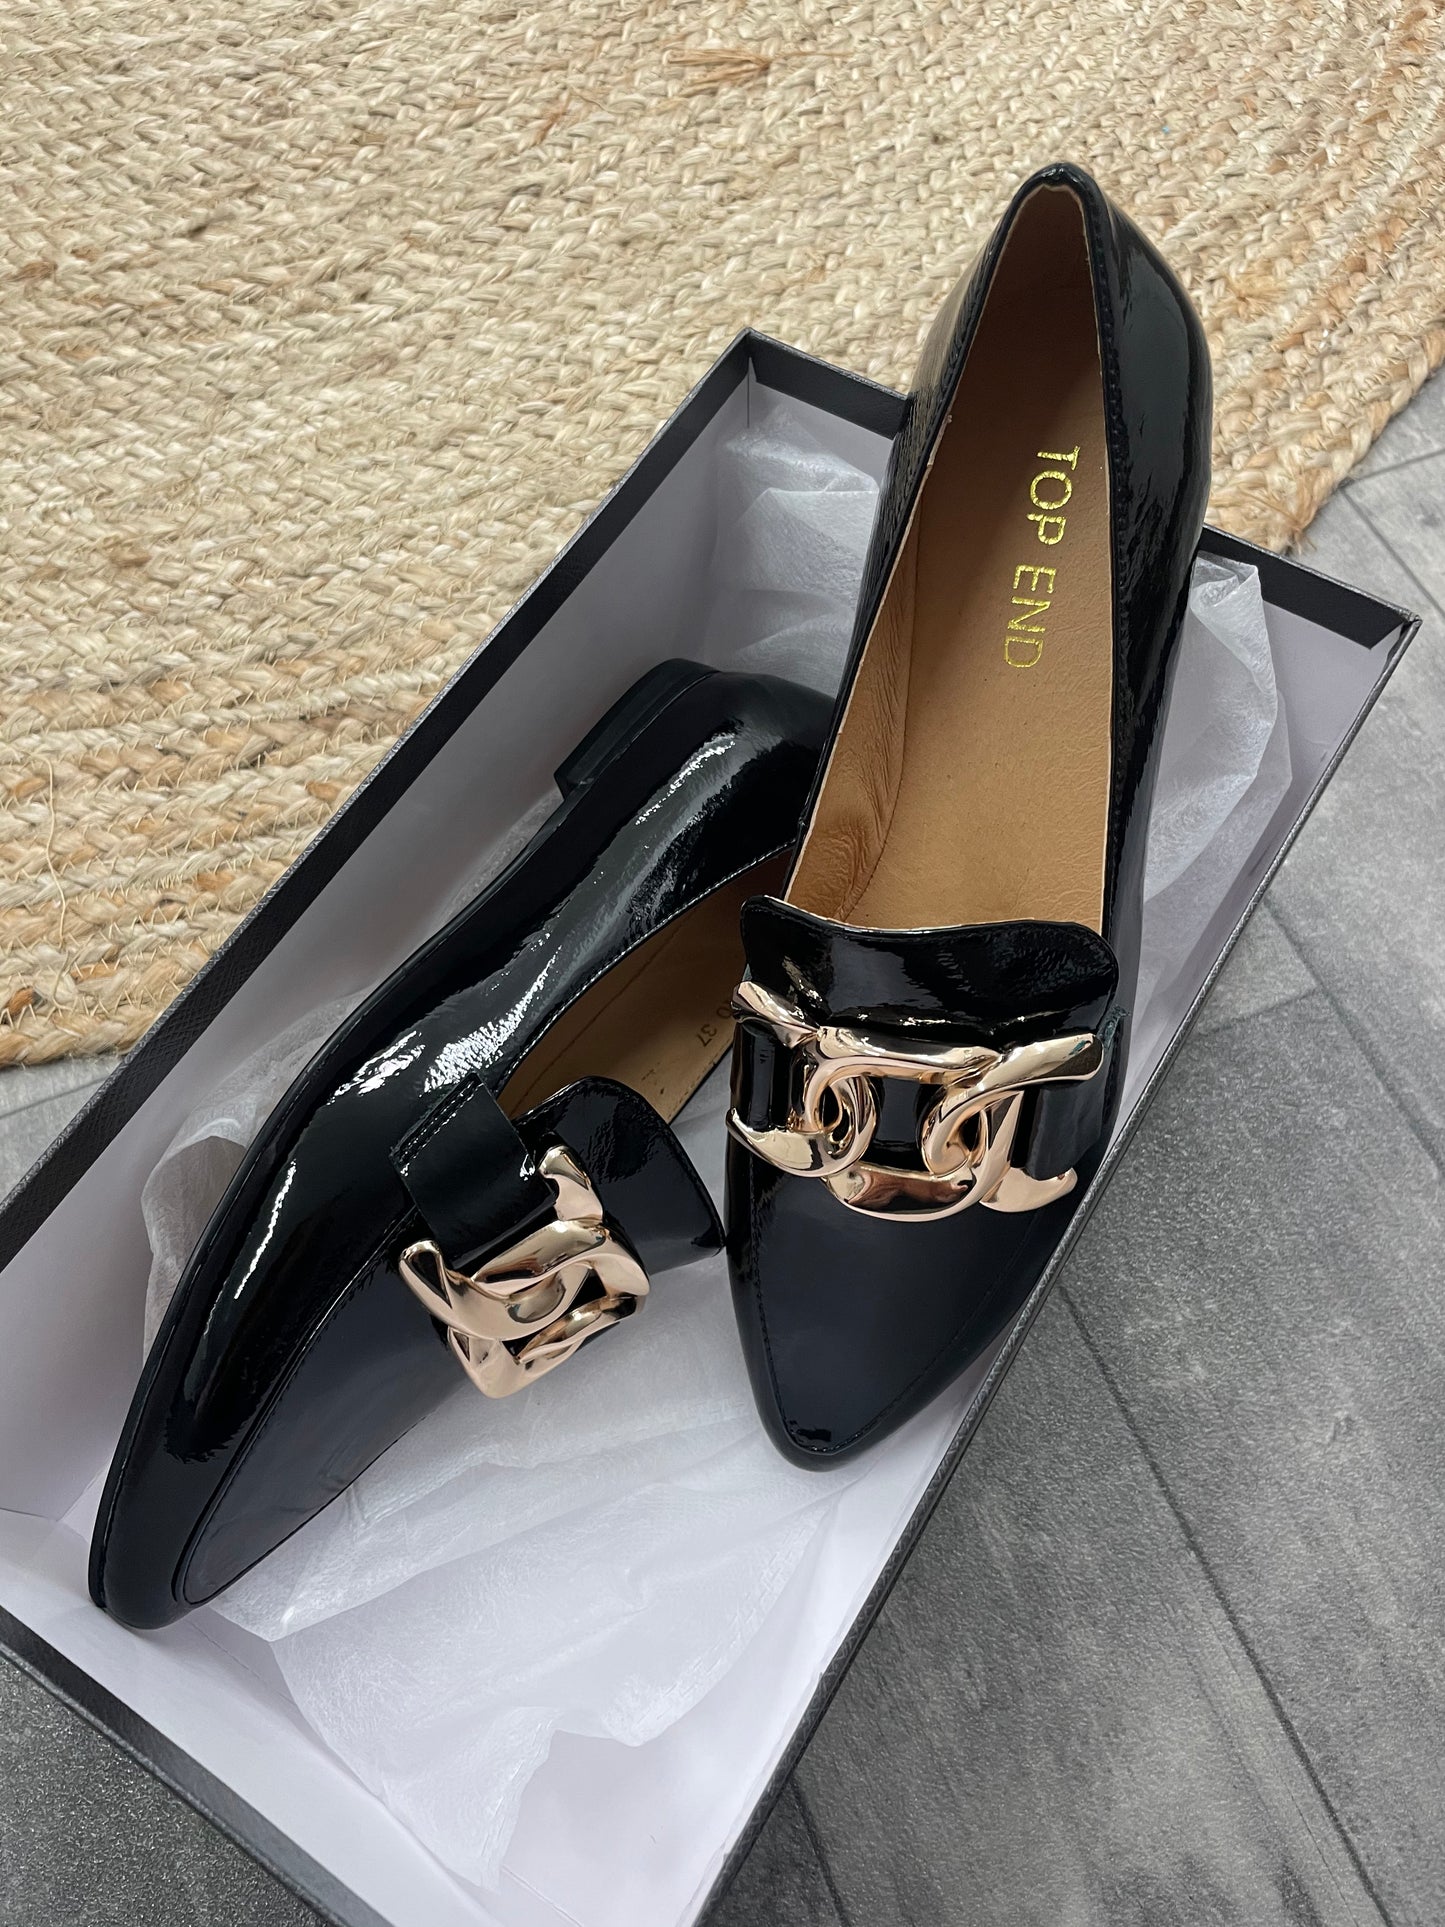 Socoro Patent Leather - Emelda's Shoes